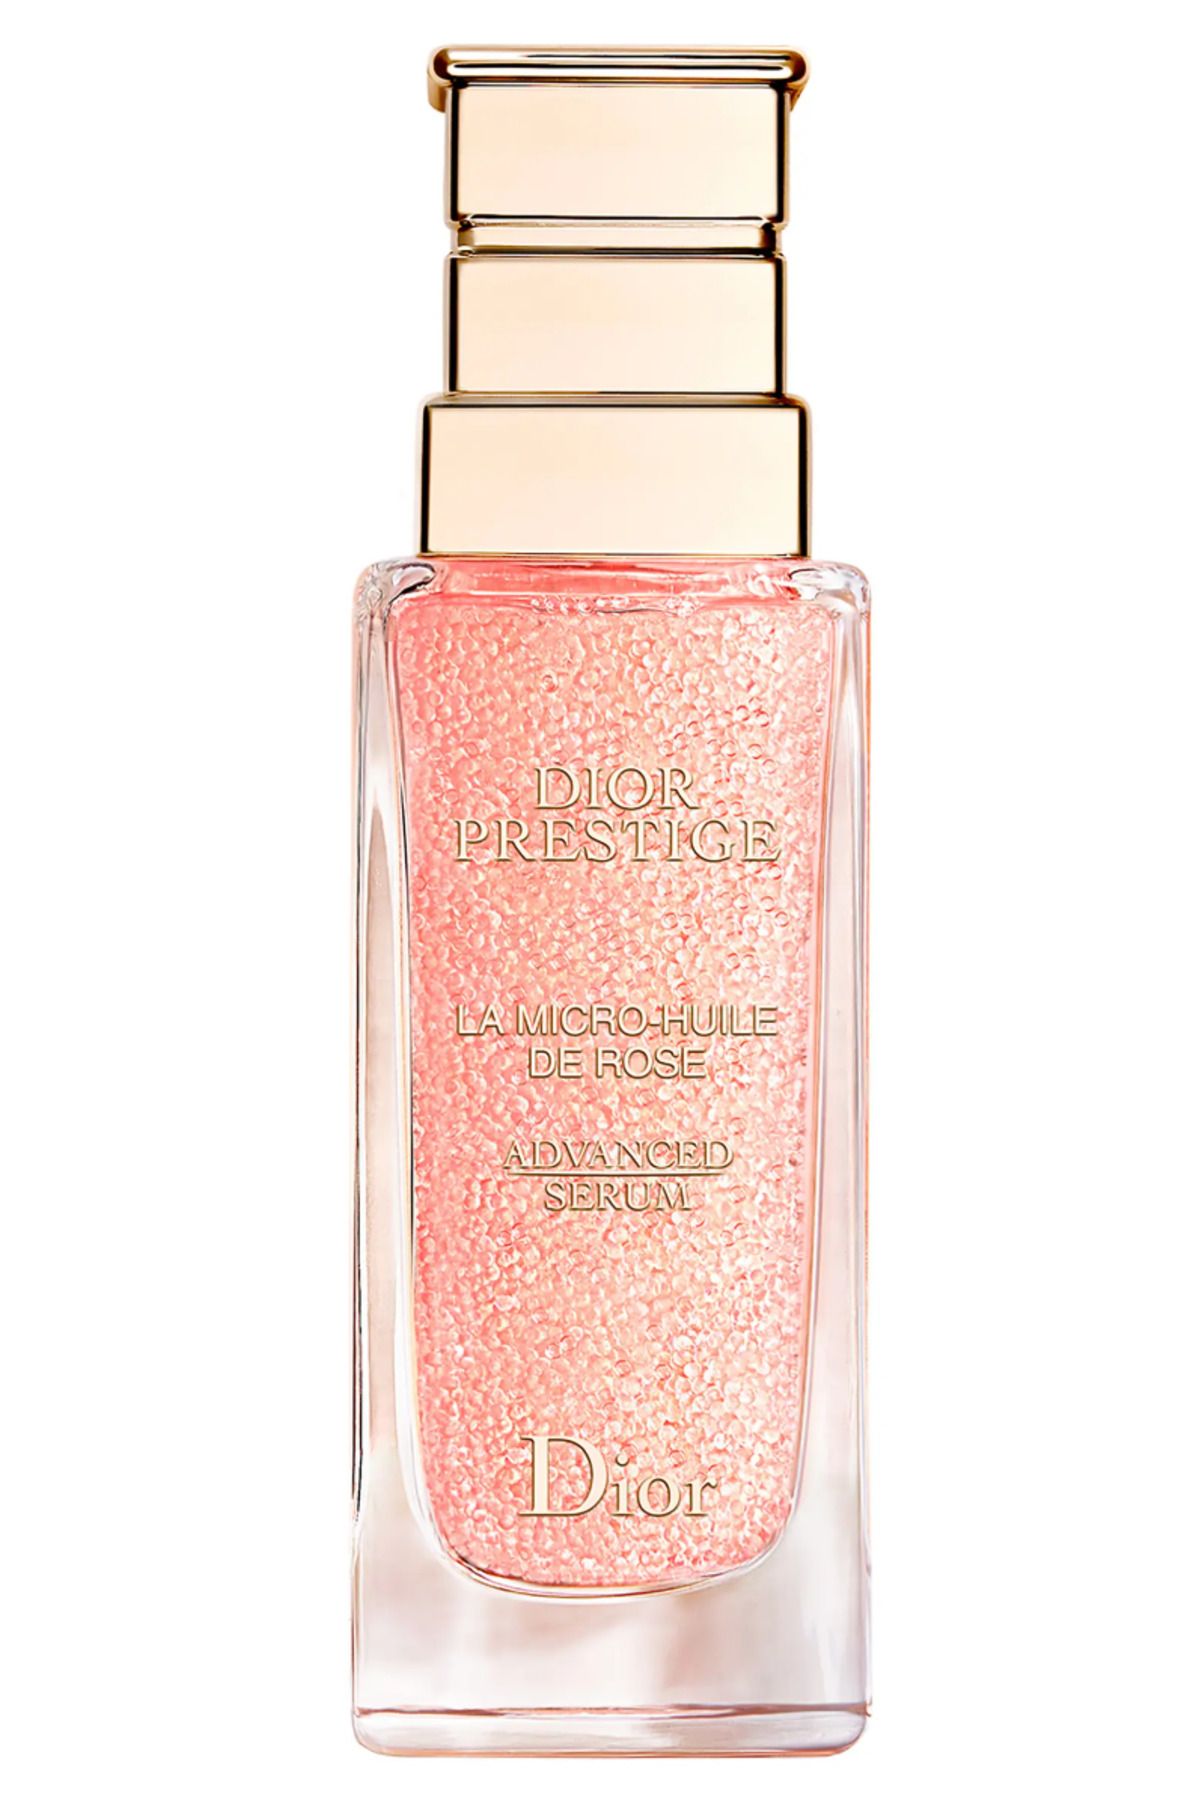 Dior Prestige La Micro-Huile de Rose Advanced Serum 75 Ml